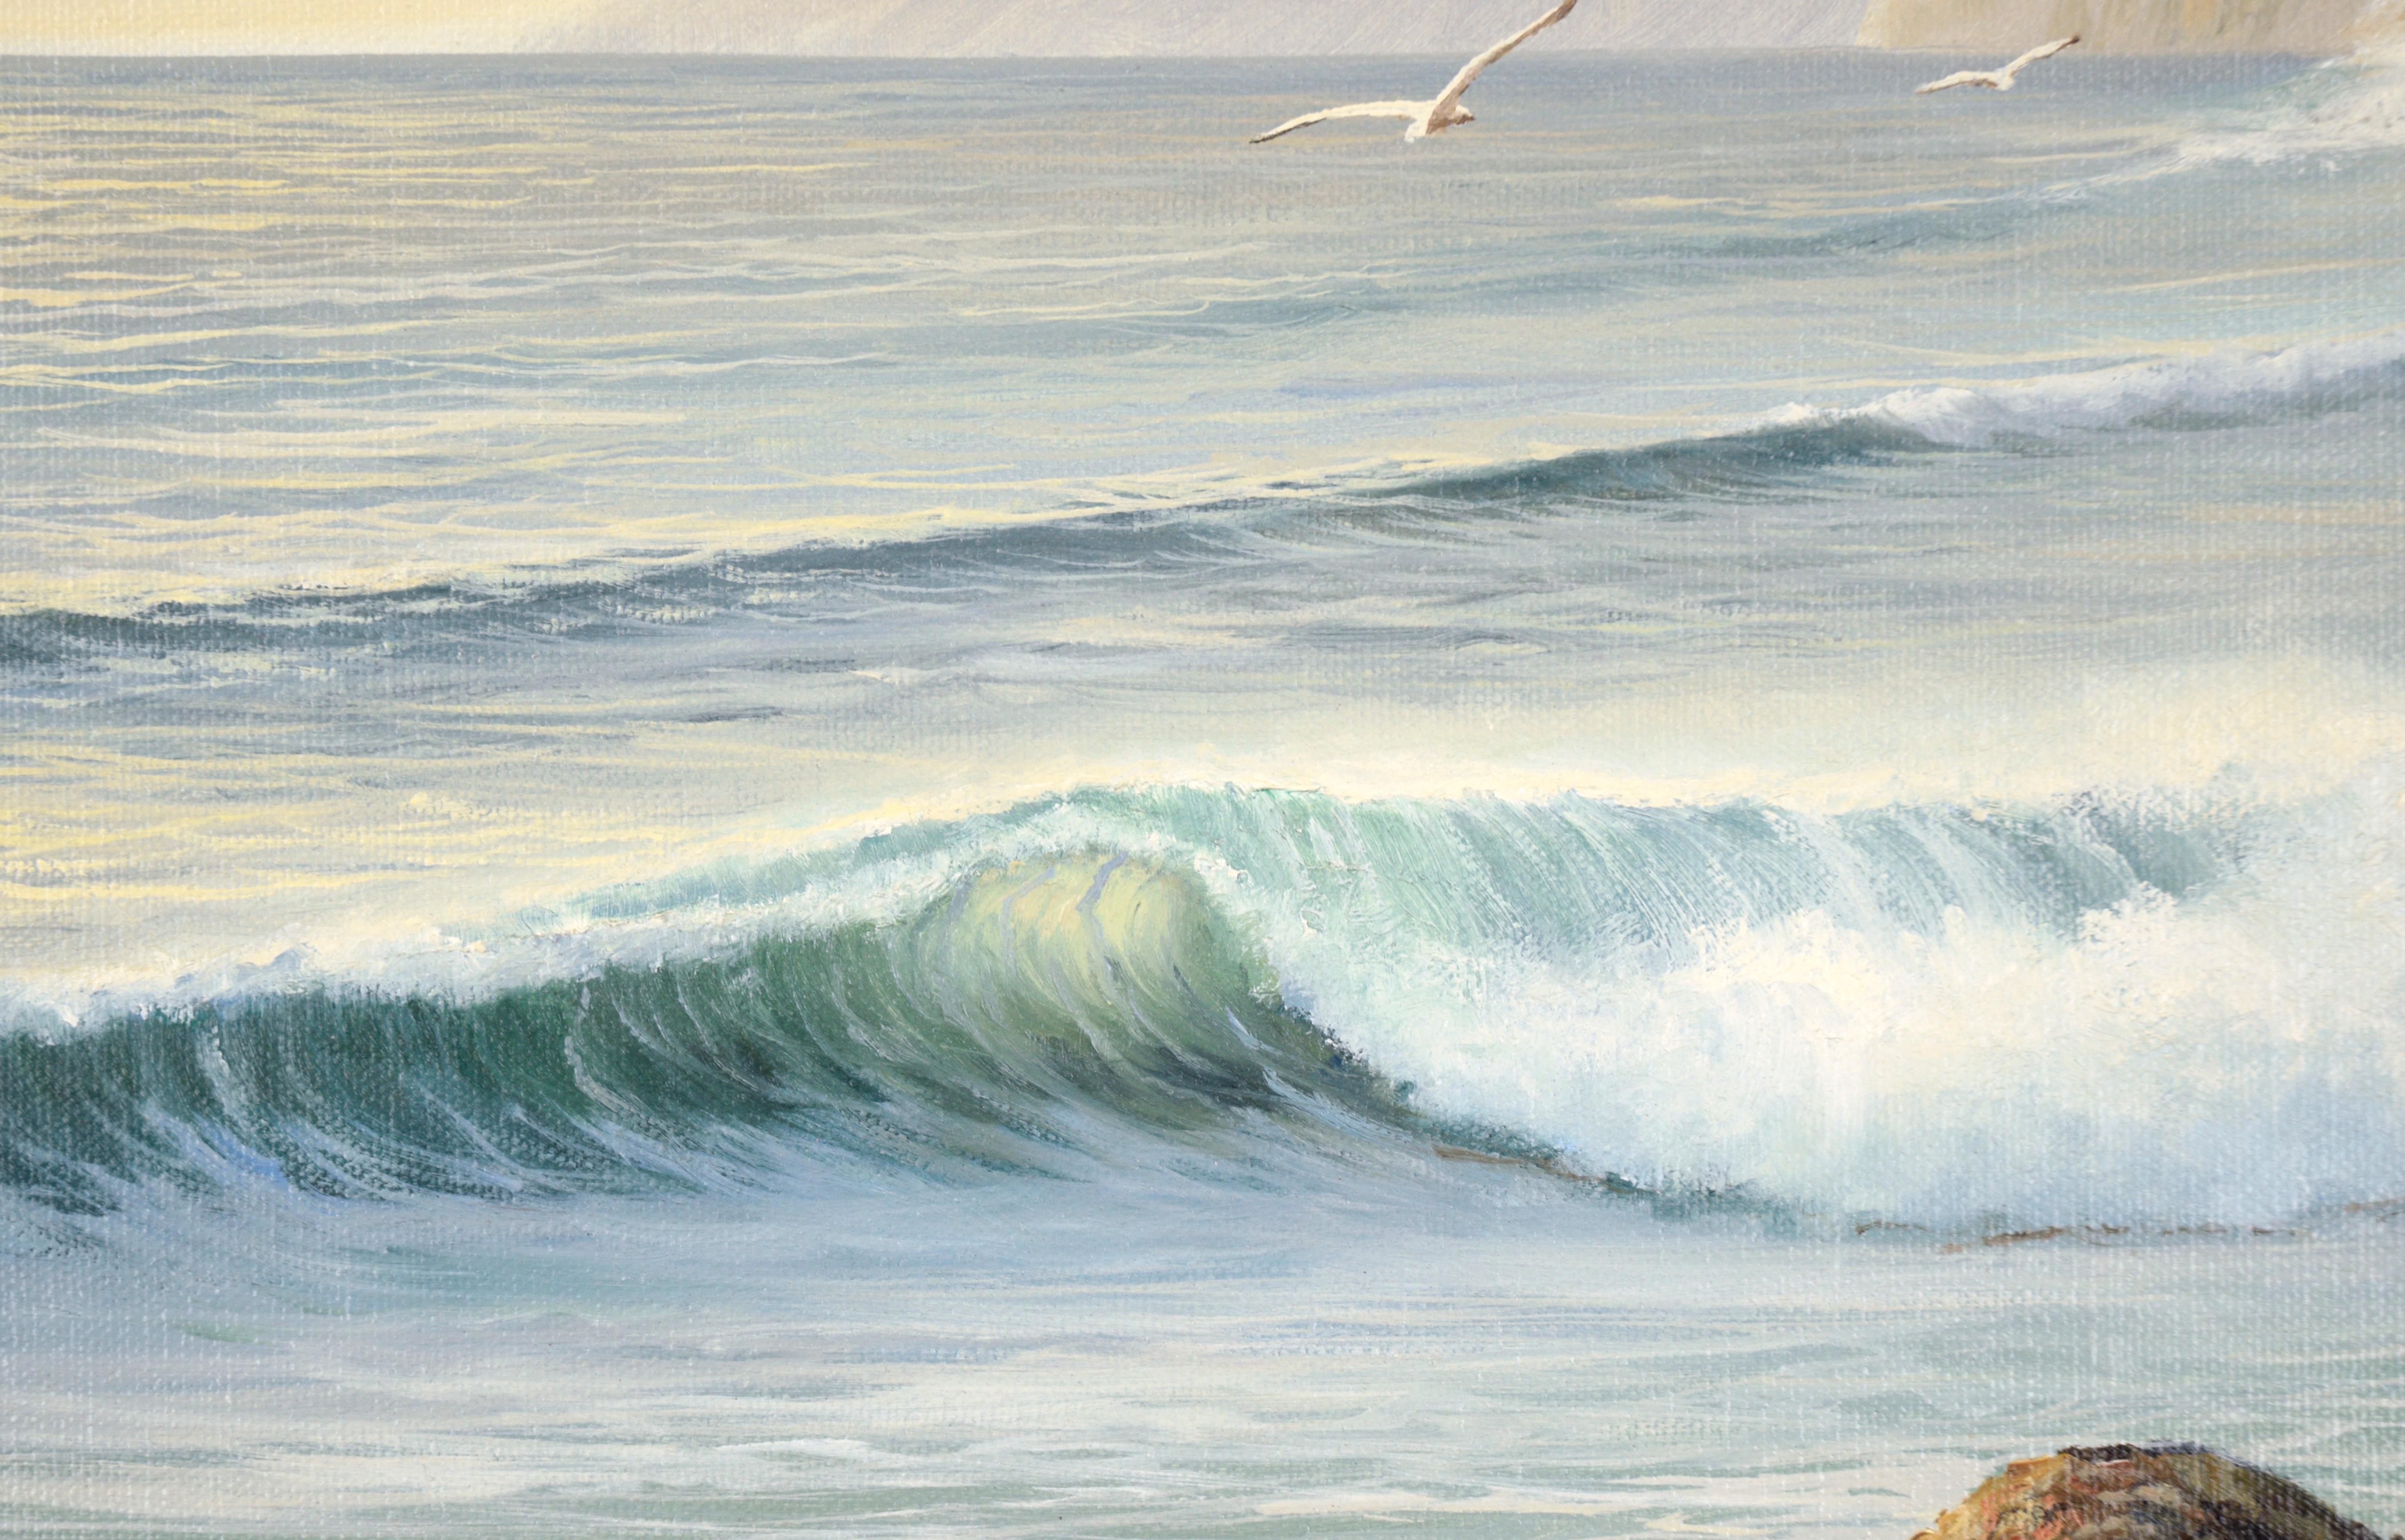 Paysage marin très détaillé de William Henry Blackman (Américain, né en 1930). Une vague s'écrase sur le rivage, brillante à cause du soleil qui la traverse. Au-dessus de la vague, quelques mouettes planent sur la scène. Les rochers au premier plan